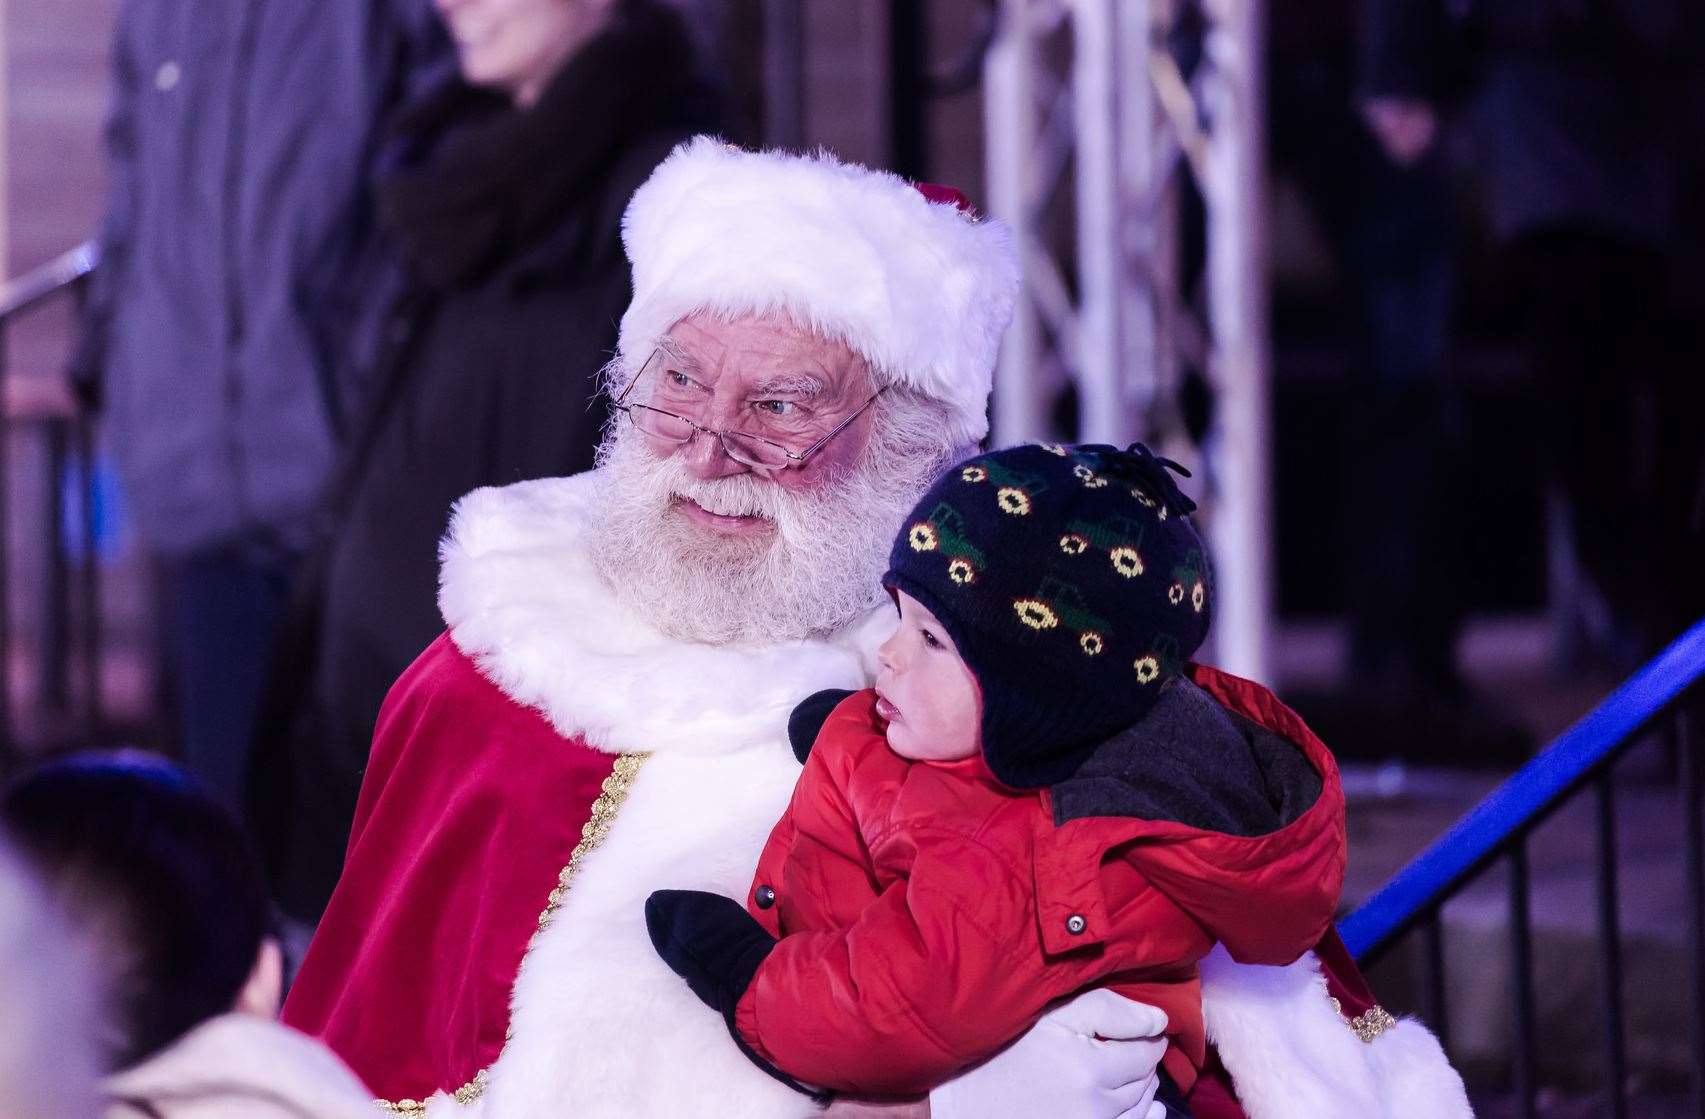 Santa at the ice rink in 2018